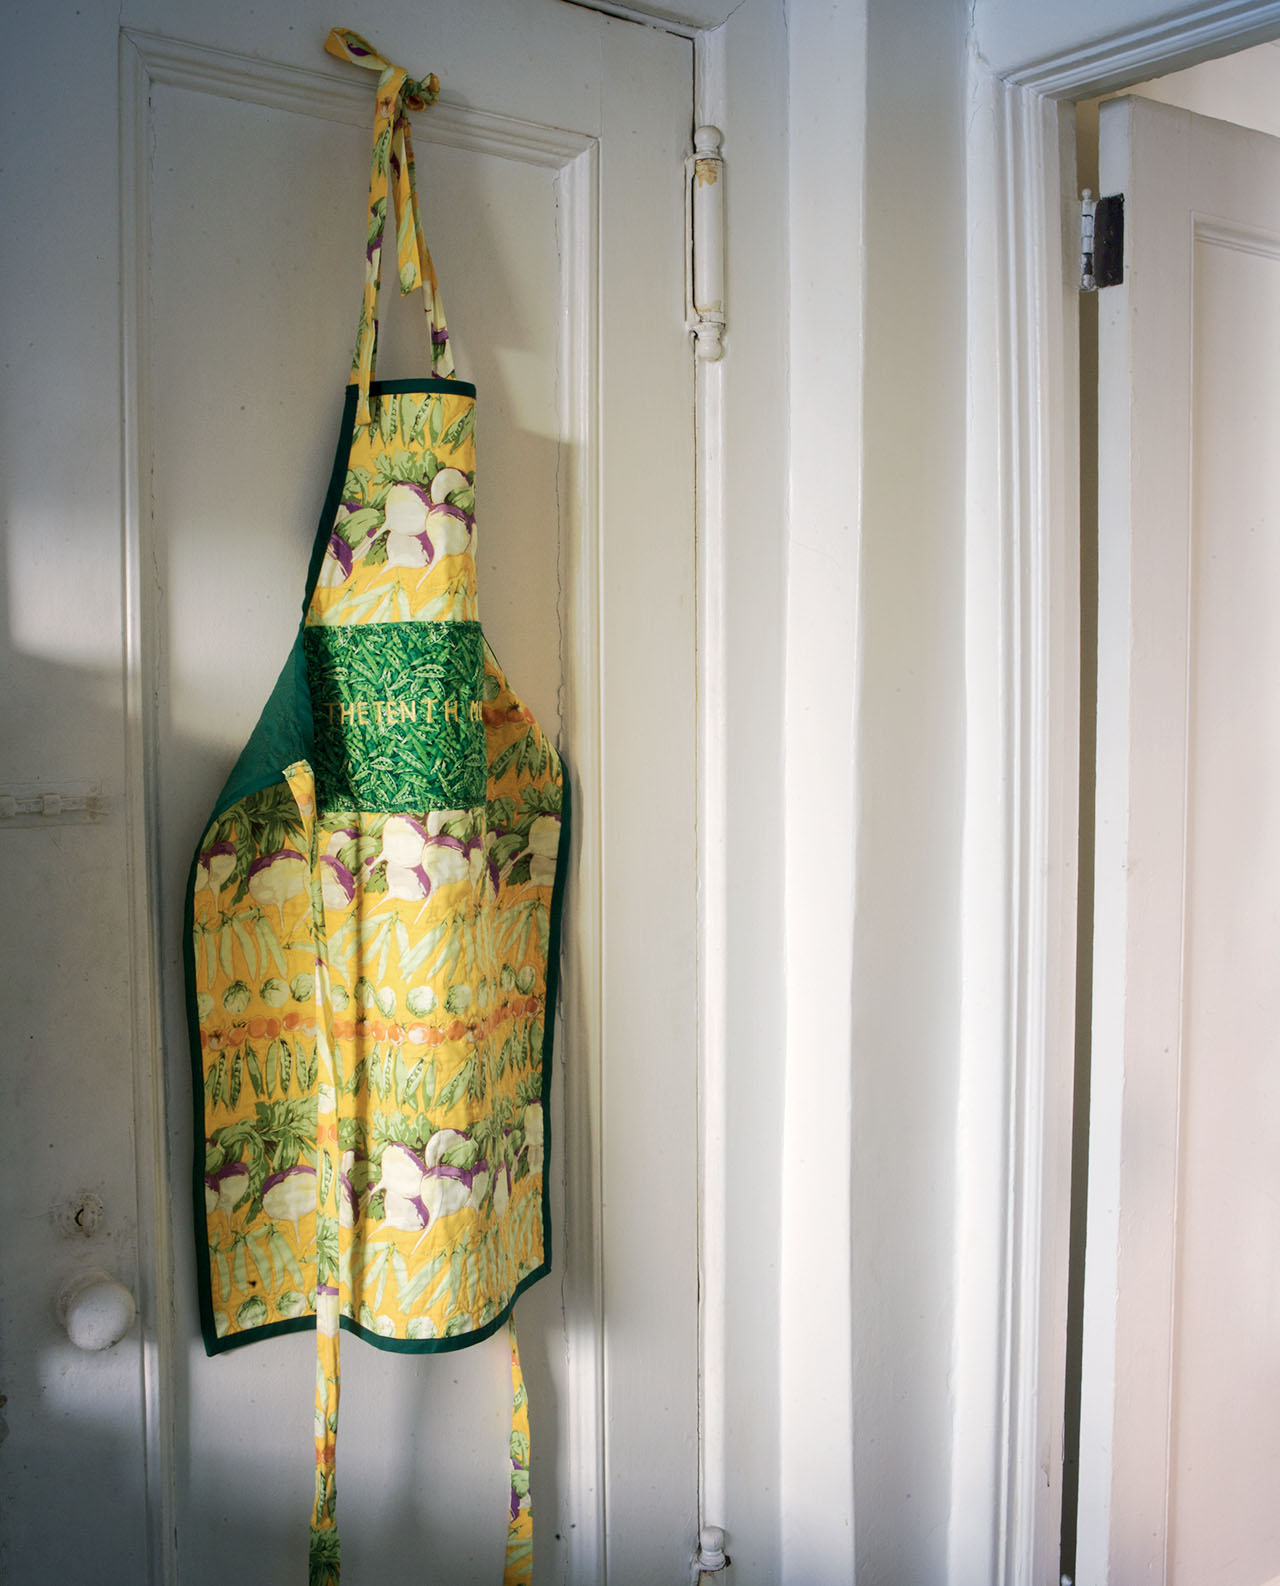 esteemed editor Judith Jones kept her apron on the back of her kitchen door - photo 3